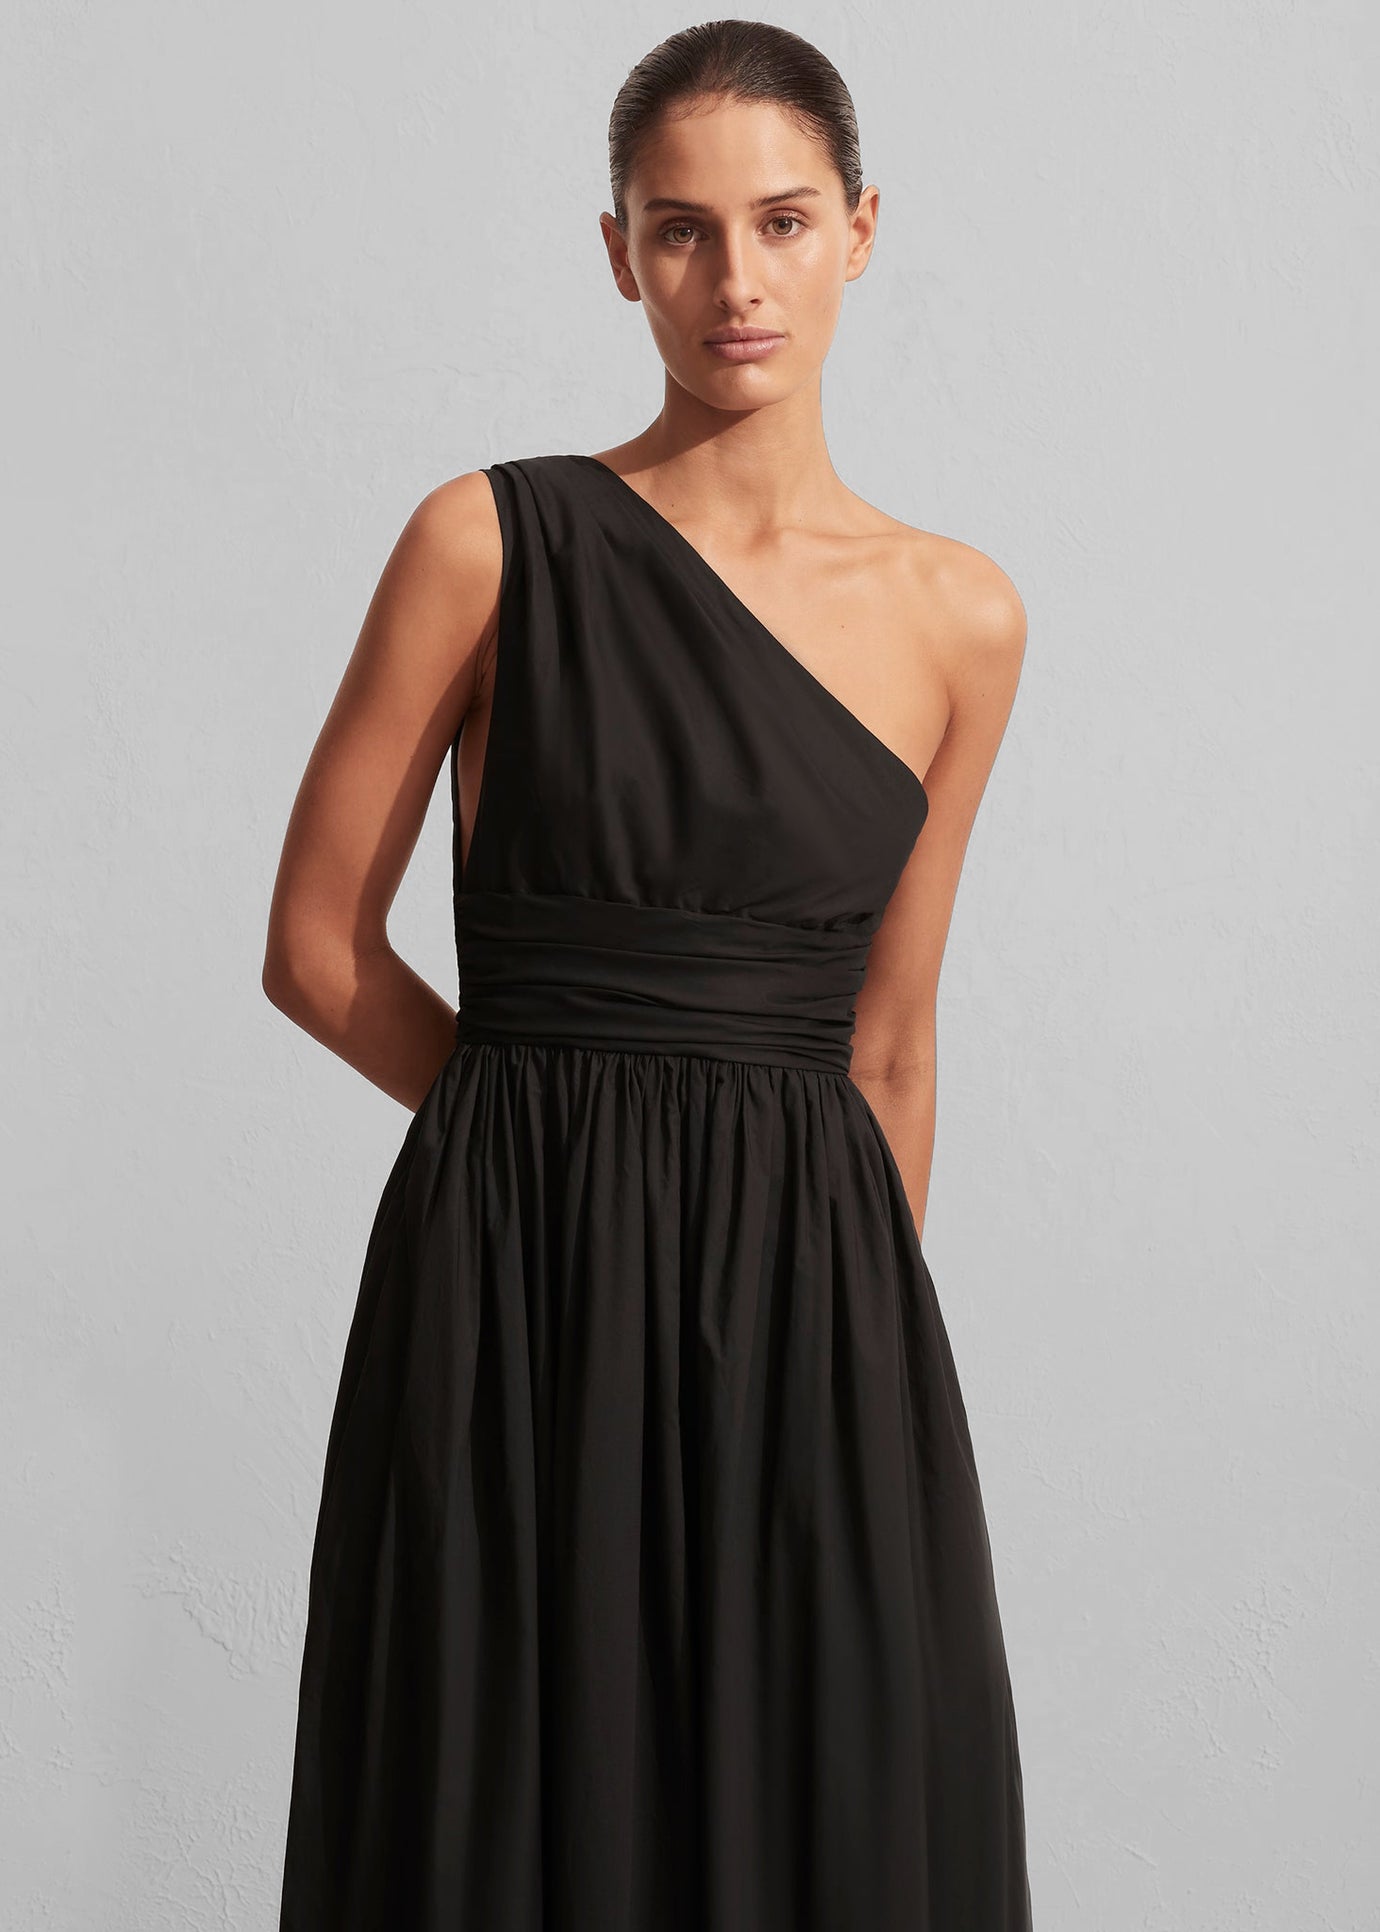 Matteau Gathered One Shoulder Dress - Black - 1